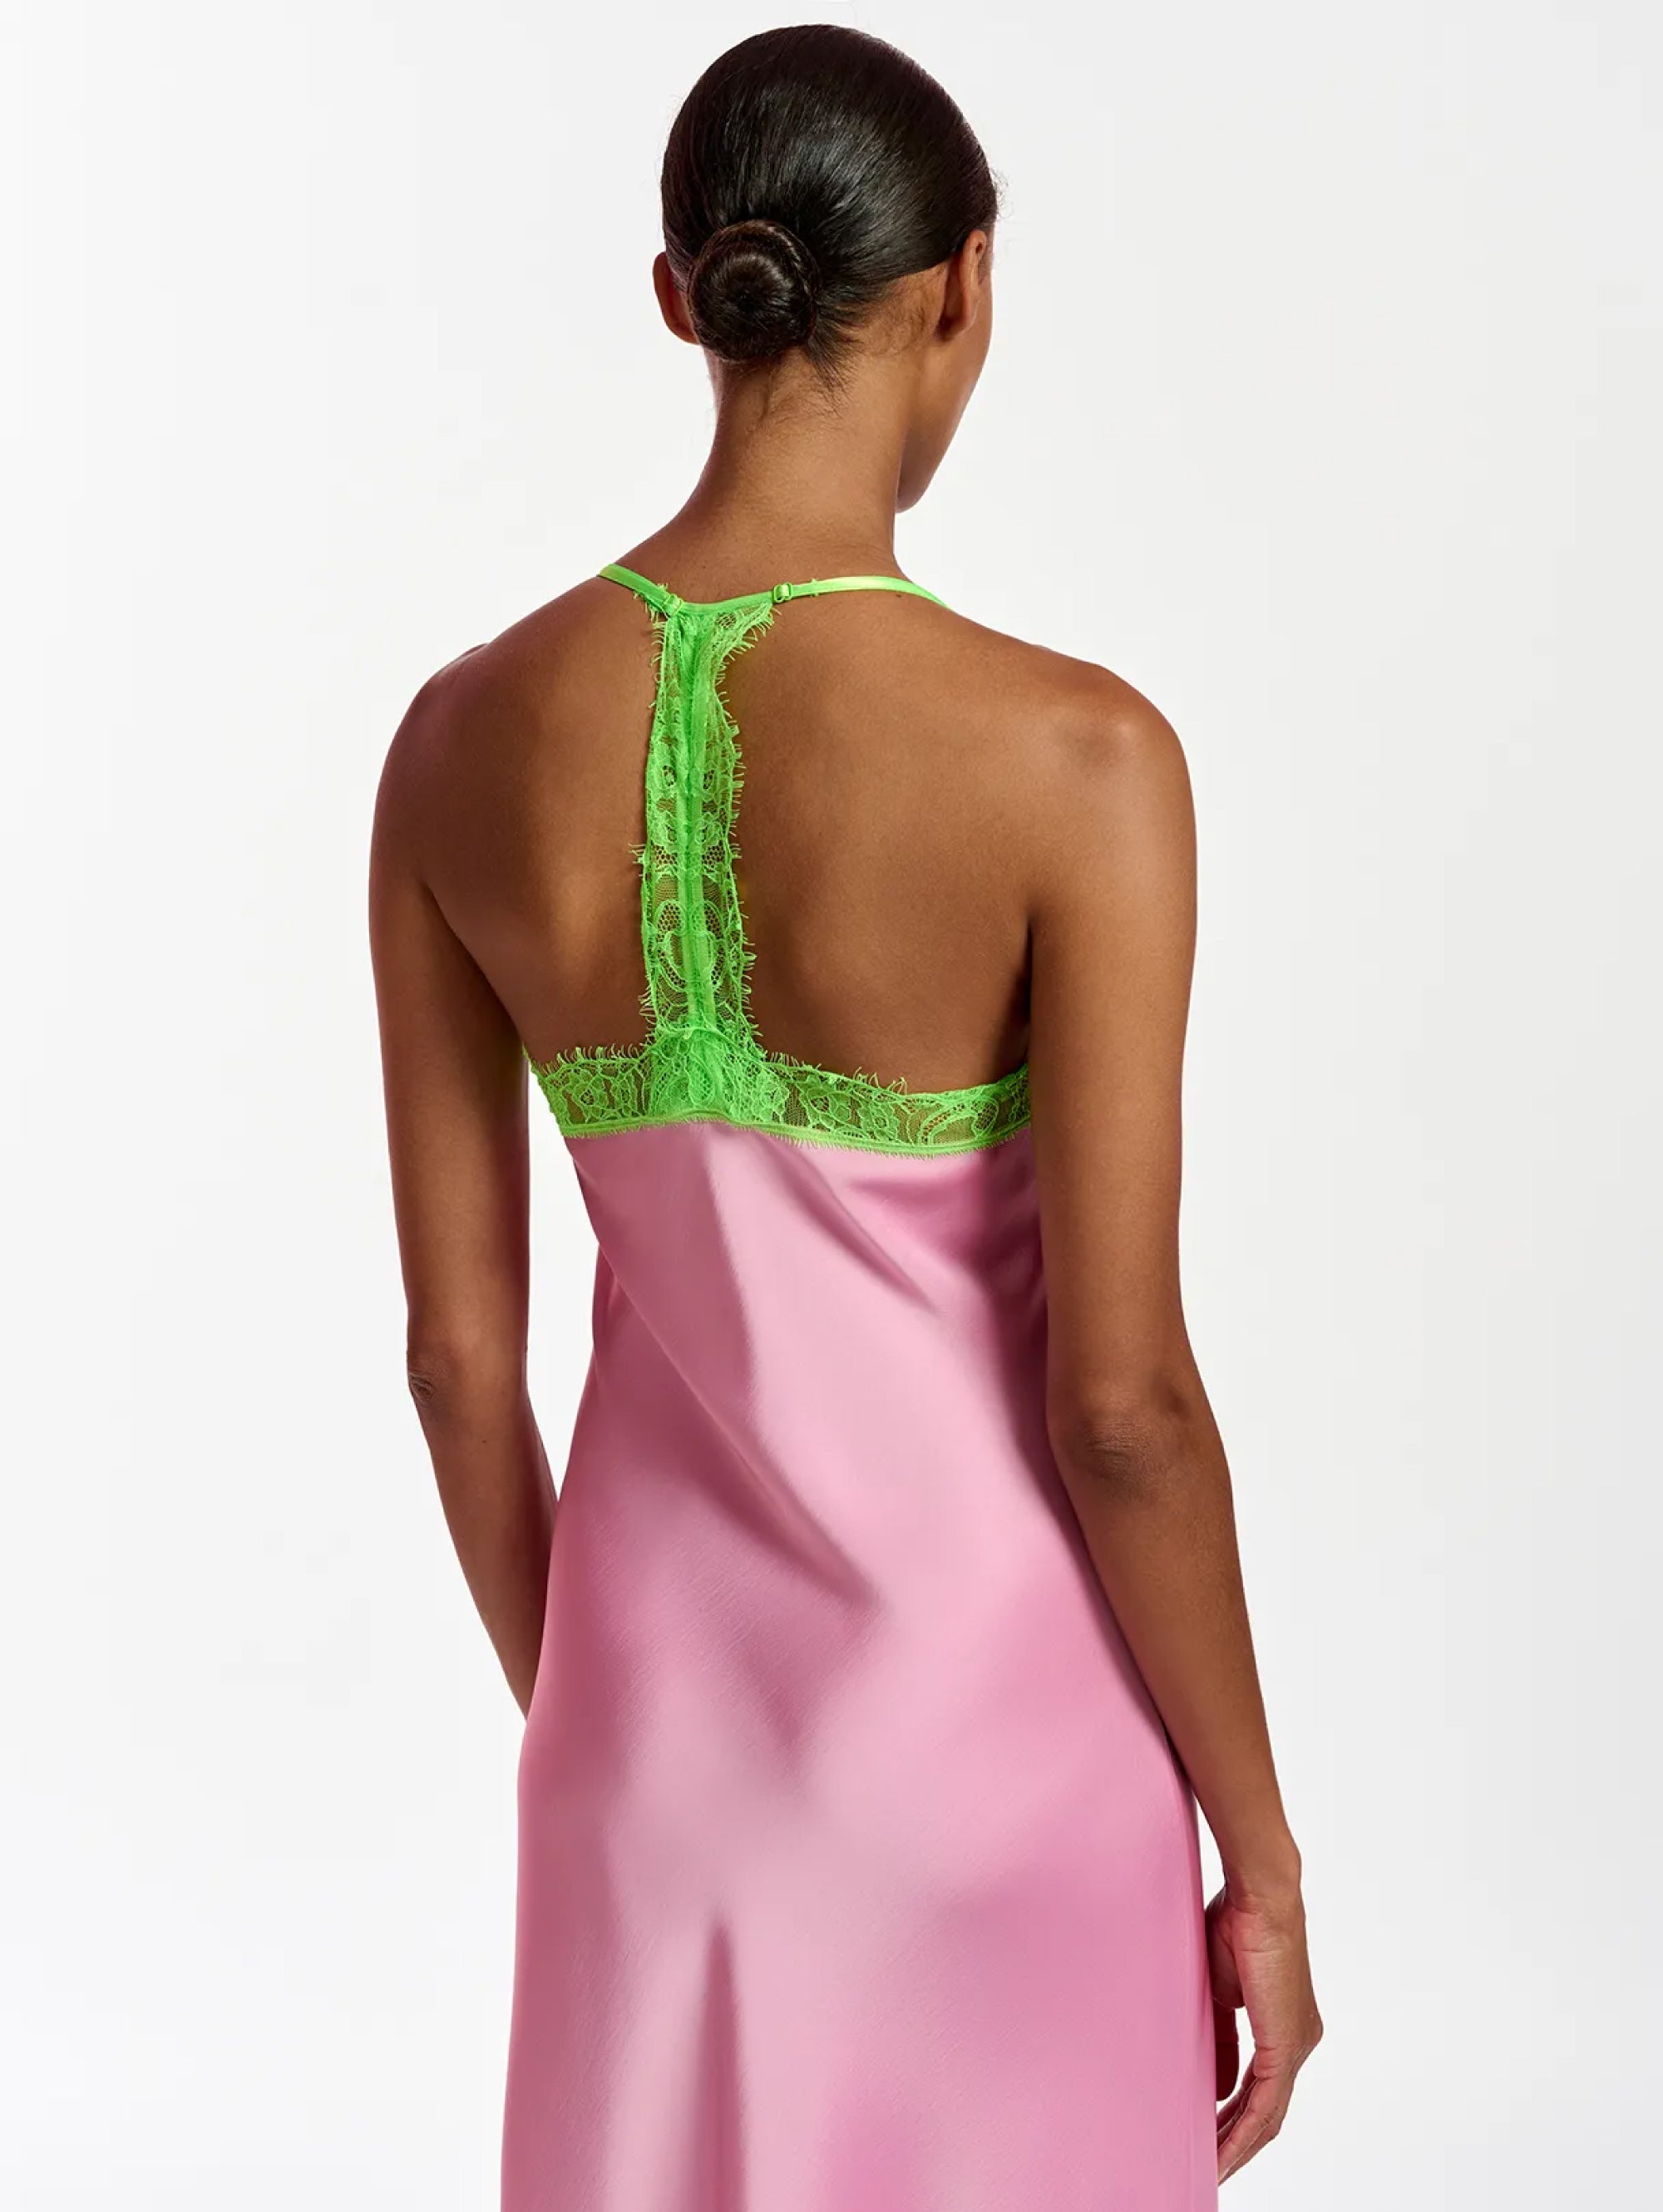 Pink Satin Longuette Slip Dress